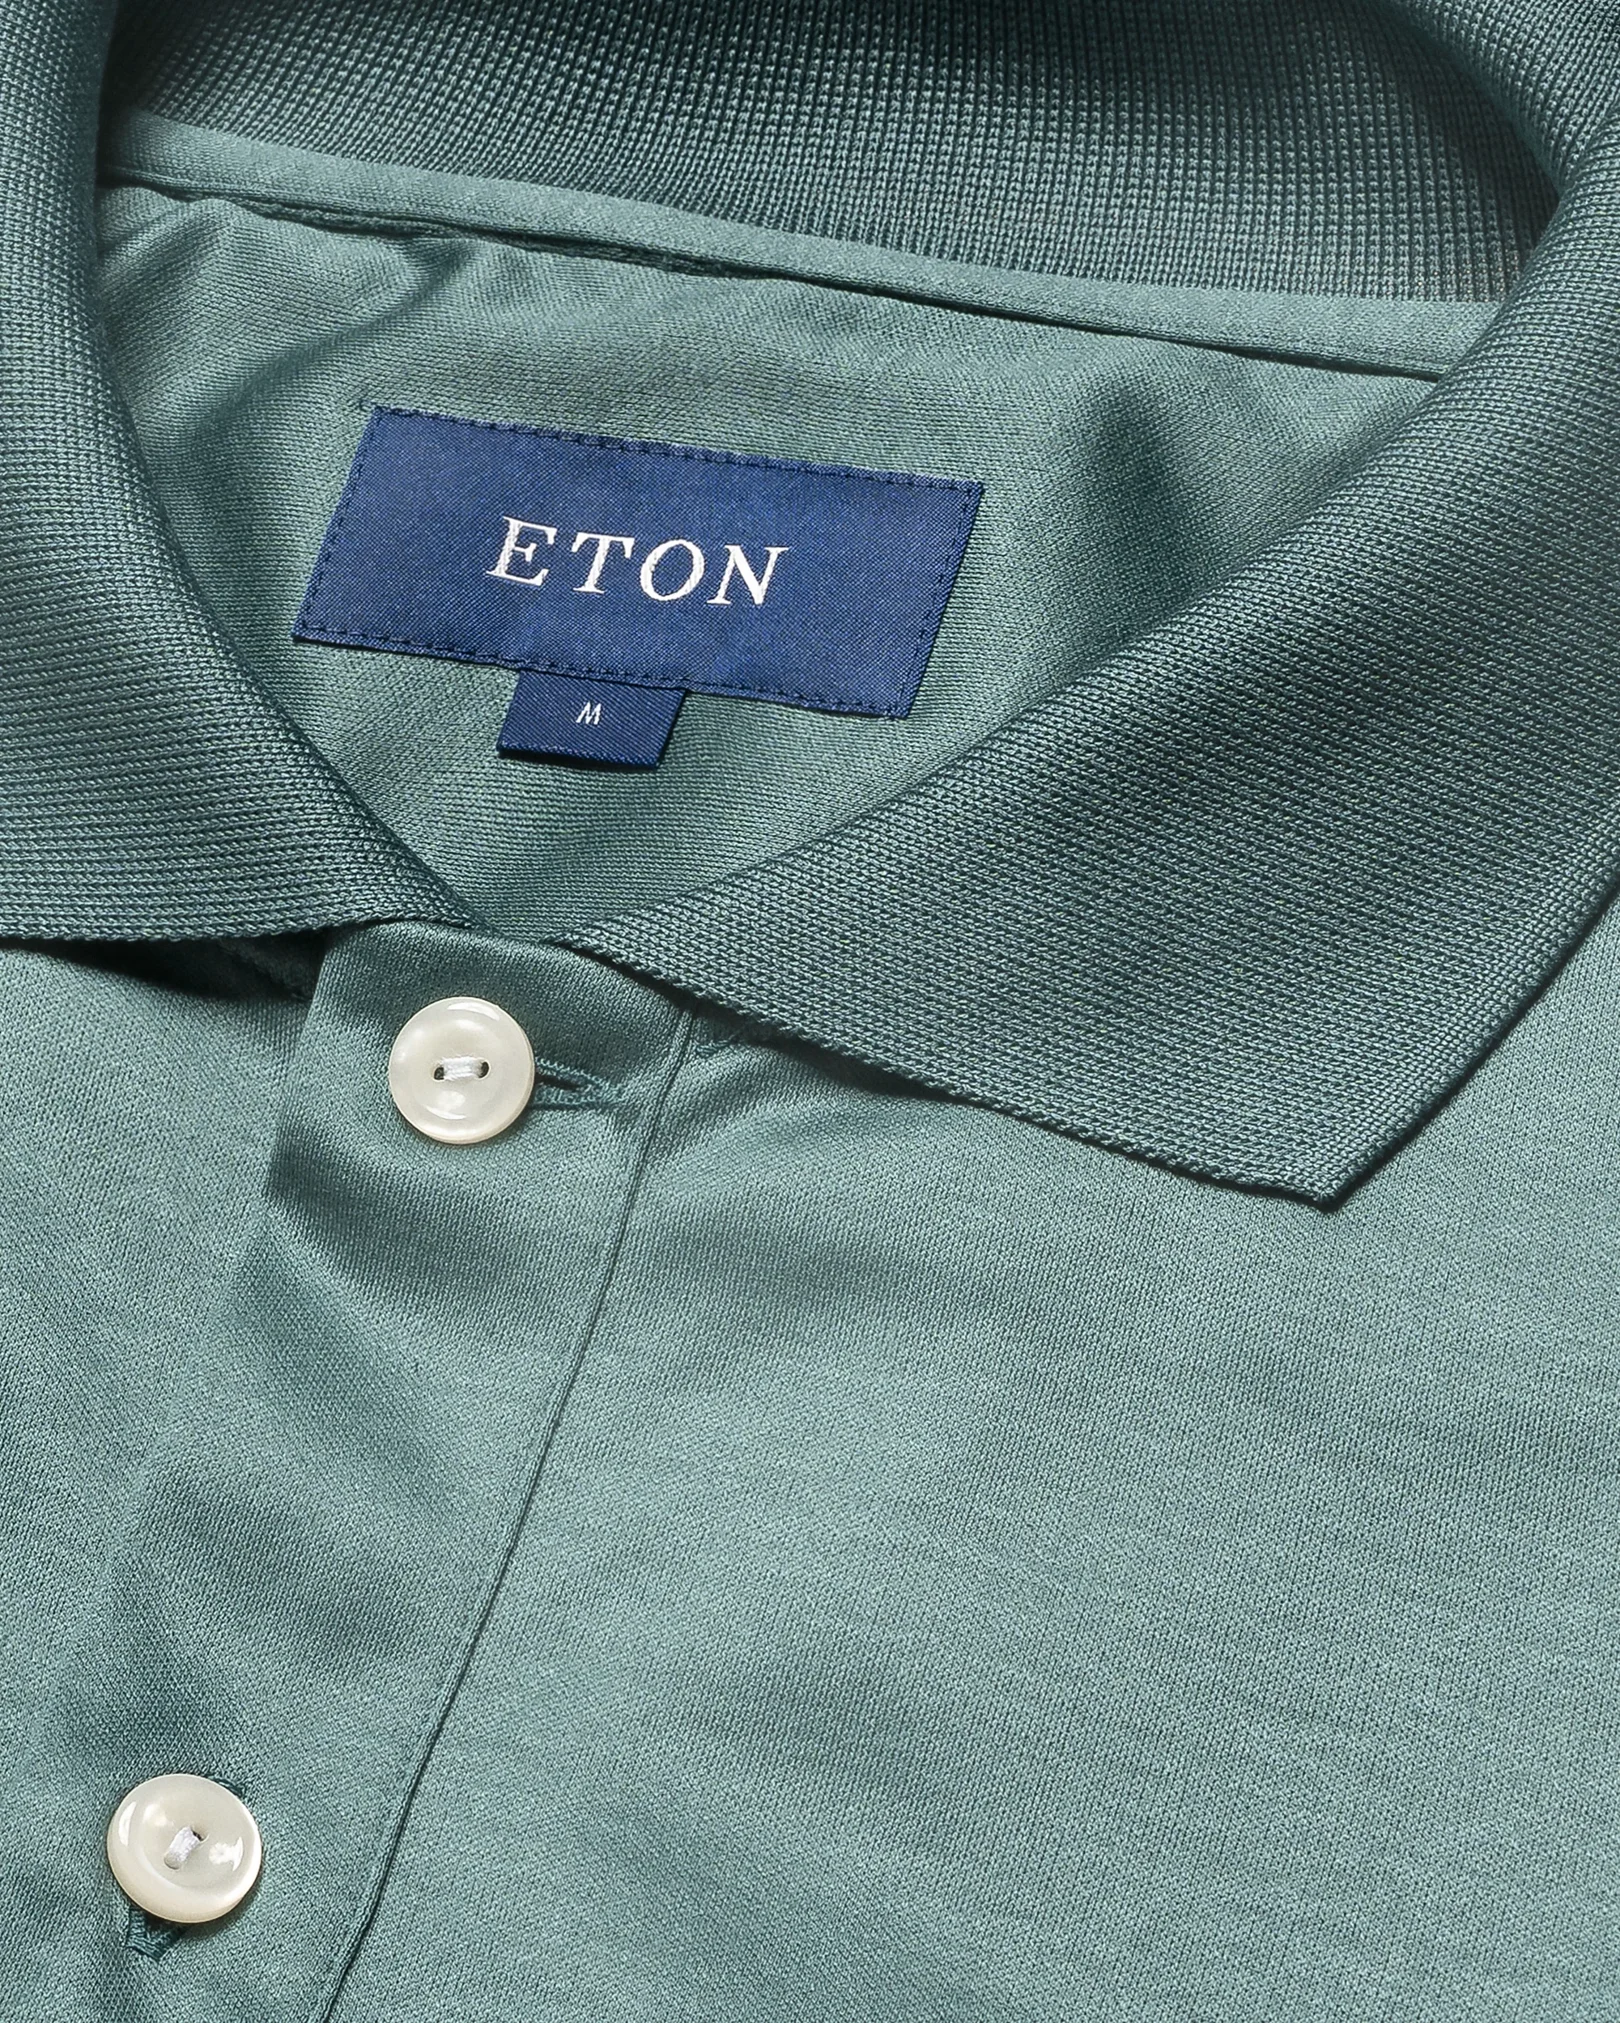 Eton - mid green jersey short sleeve